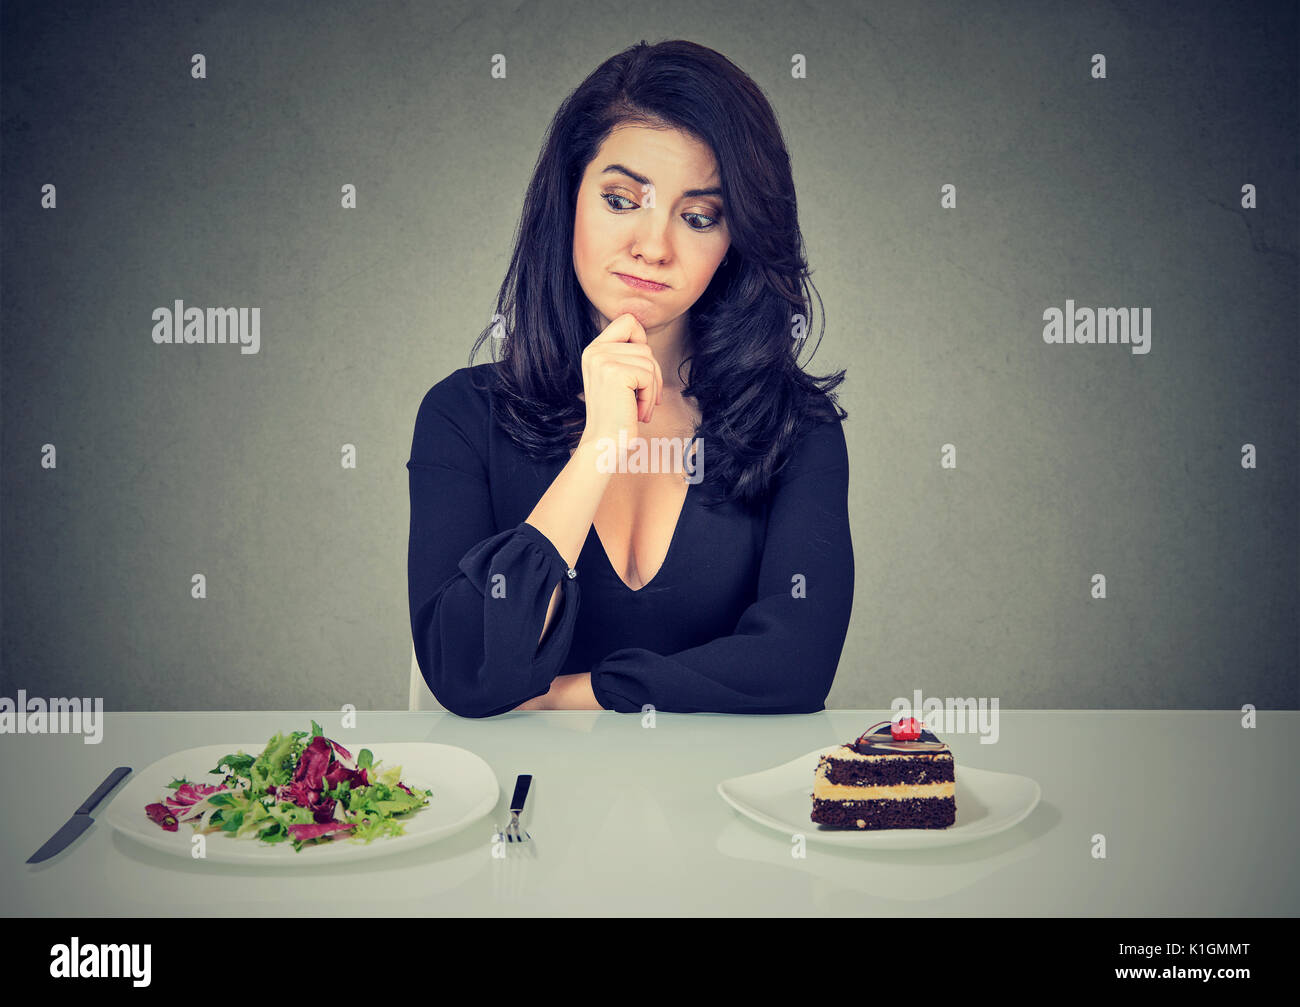 Dieting concept, belle jeune femme de choisir entre des aliments sains et savoureux gâteau Banque D'Images